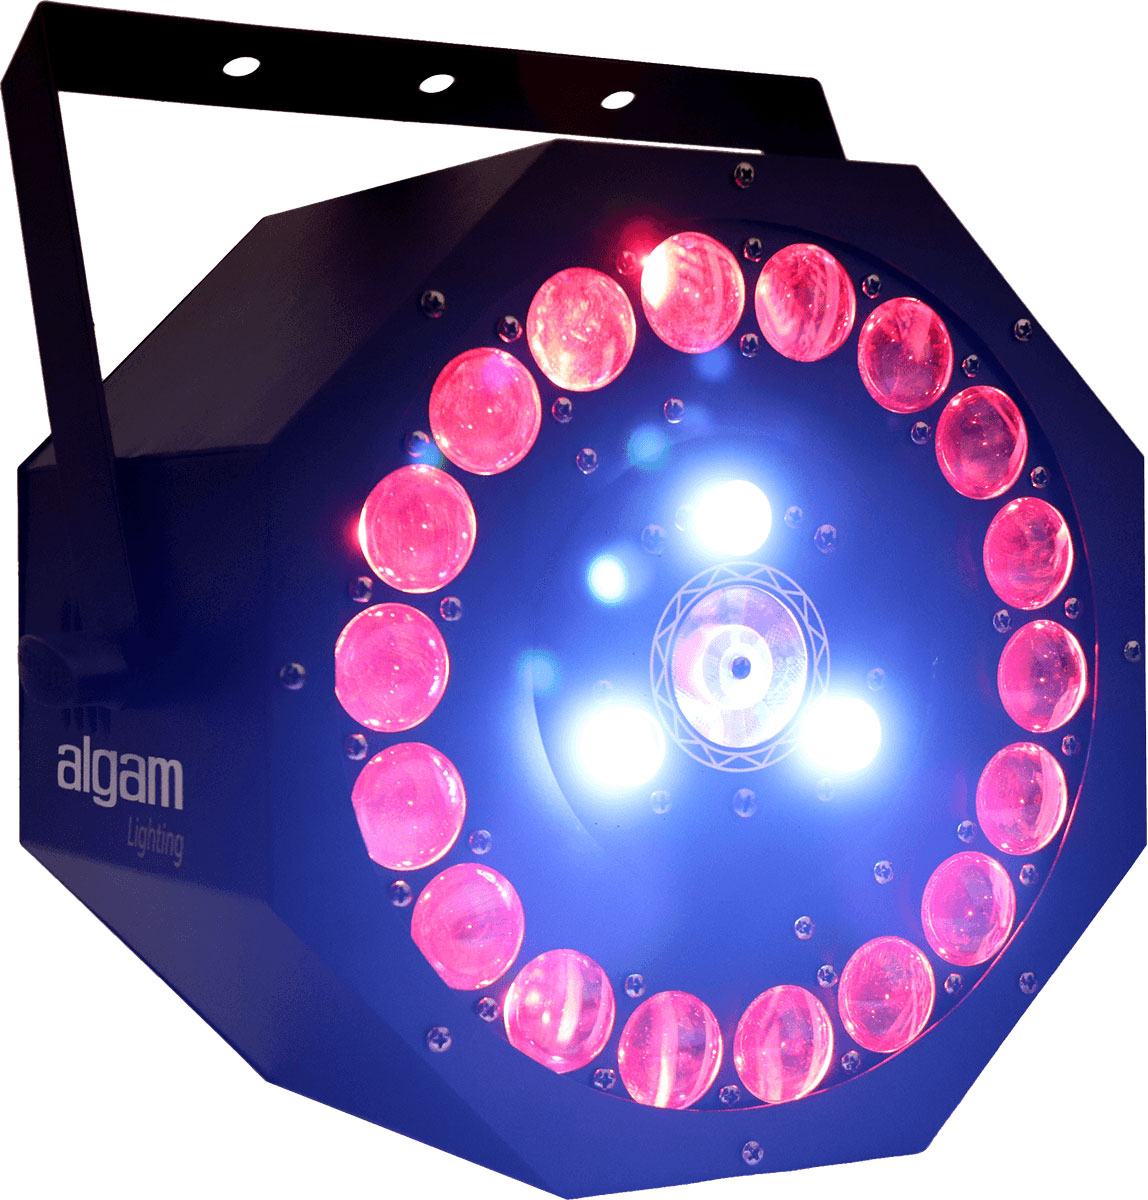 ALGAM LIGHTING SUNFLOWER - 3 X 18W 3 IN 1 LED EFFECT WITH LASER